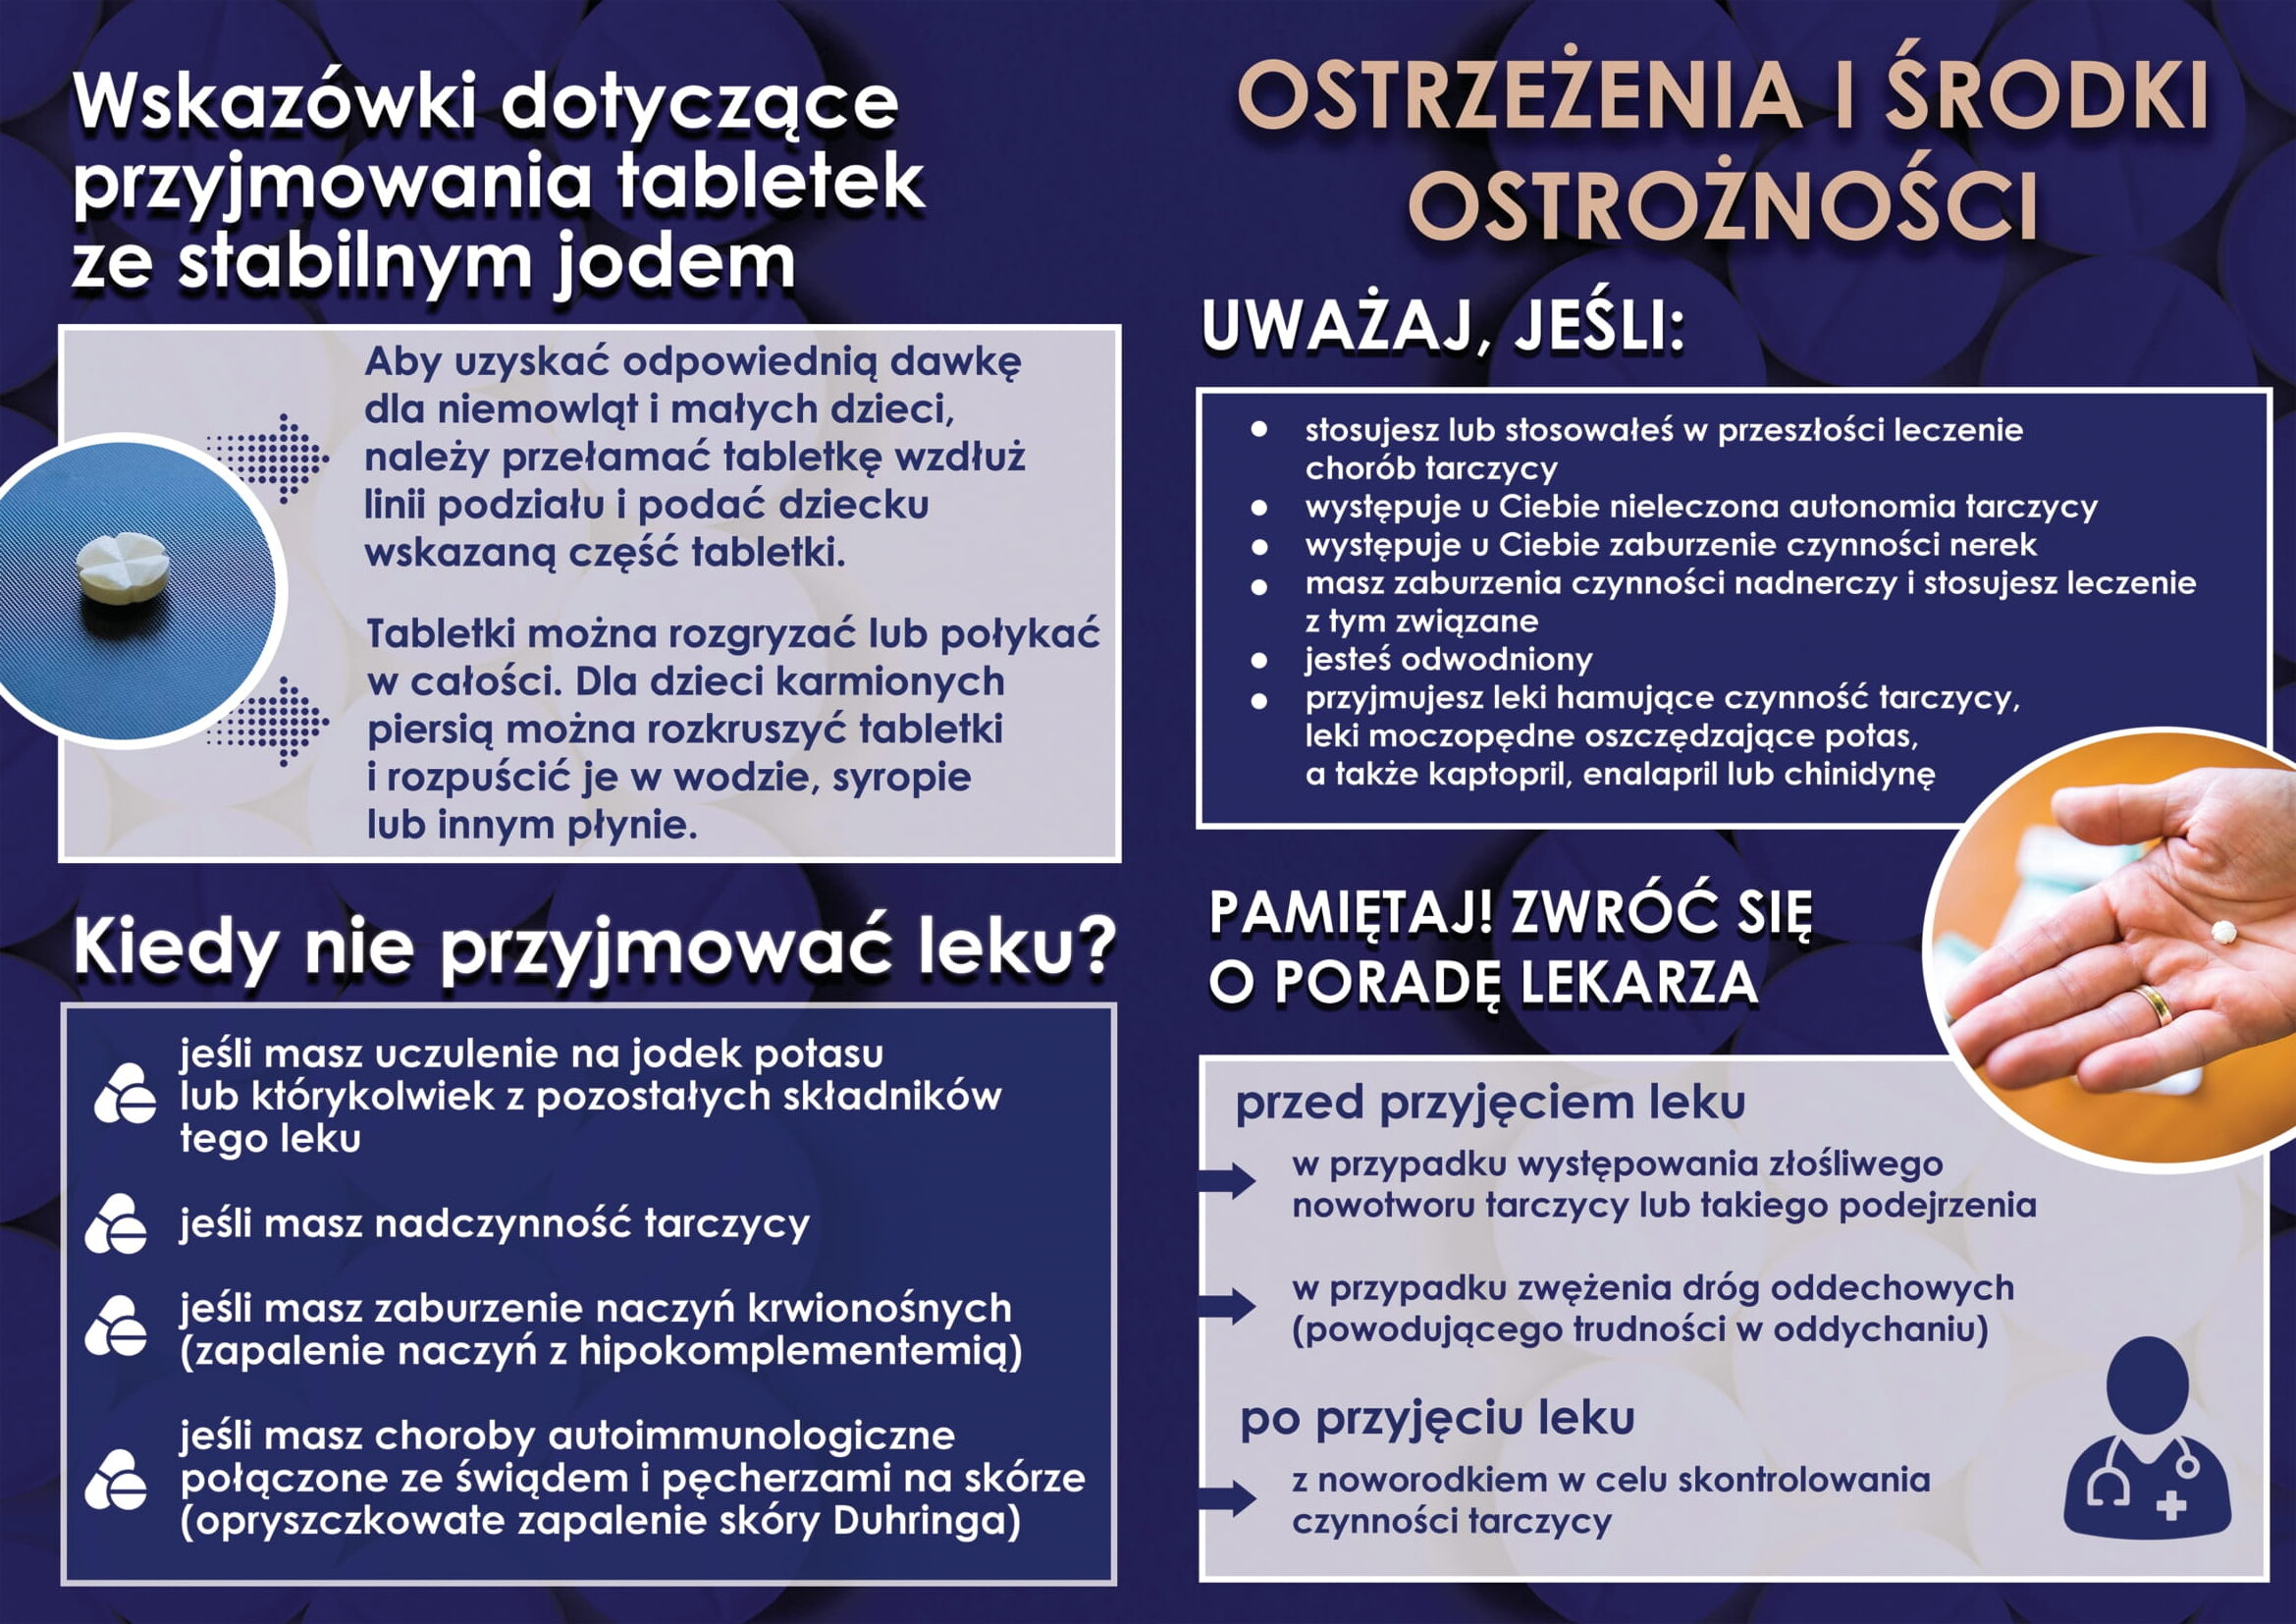 Ulotka informacyjna MSWiA cz. 2